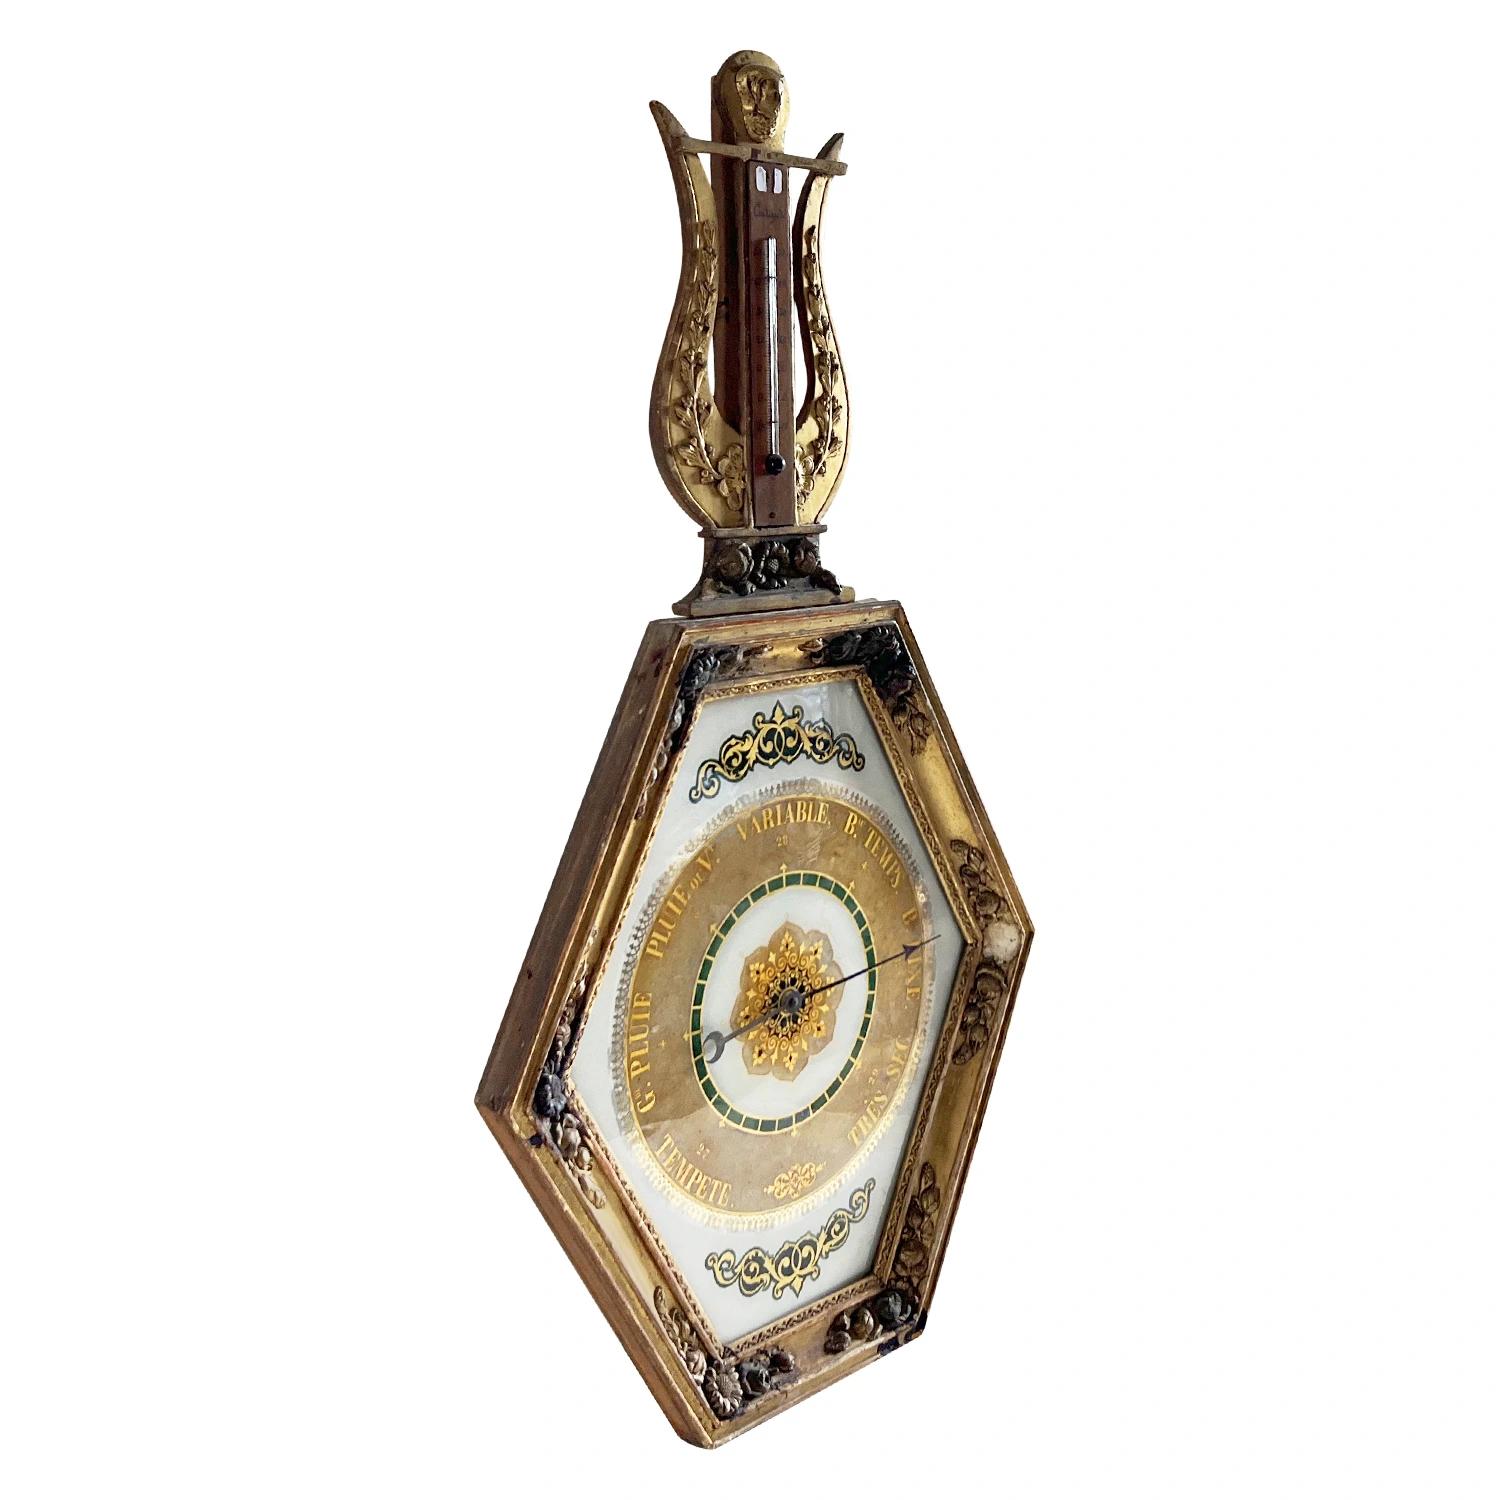 Ein seltenes, antikes, fein gearbeitetes französisches Barometer mit leierförmigem Wappenthermometer über einem großen, sechseckig gerahmten Barometer. Das Pariser Dekorationsstück ist aus handgeschnitztem, vergoldetem Holz in gutem Zustand. Die